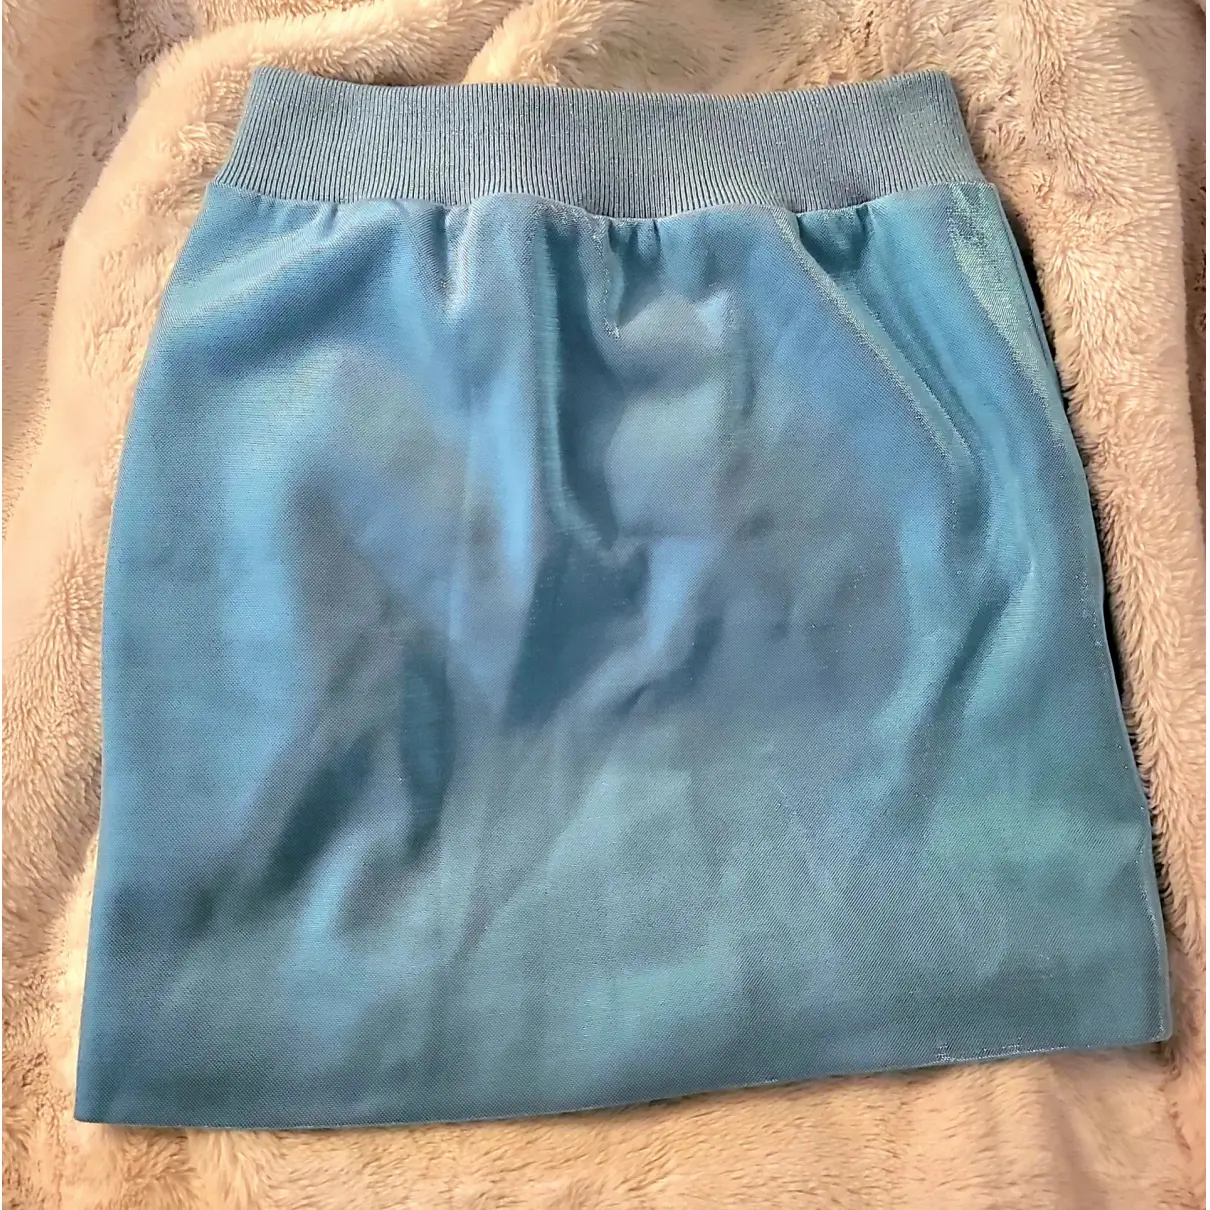 Buy Moschino Mini skirt online